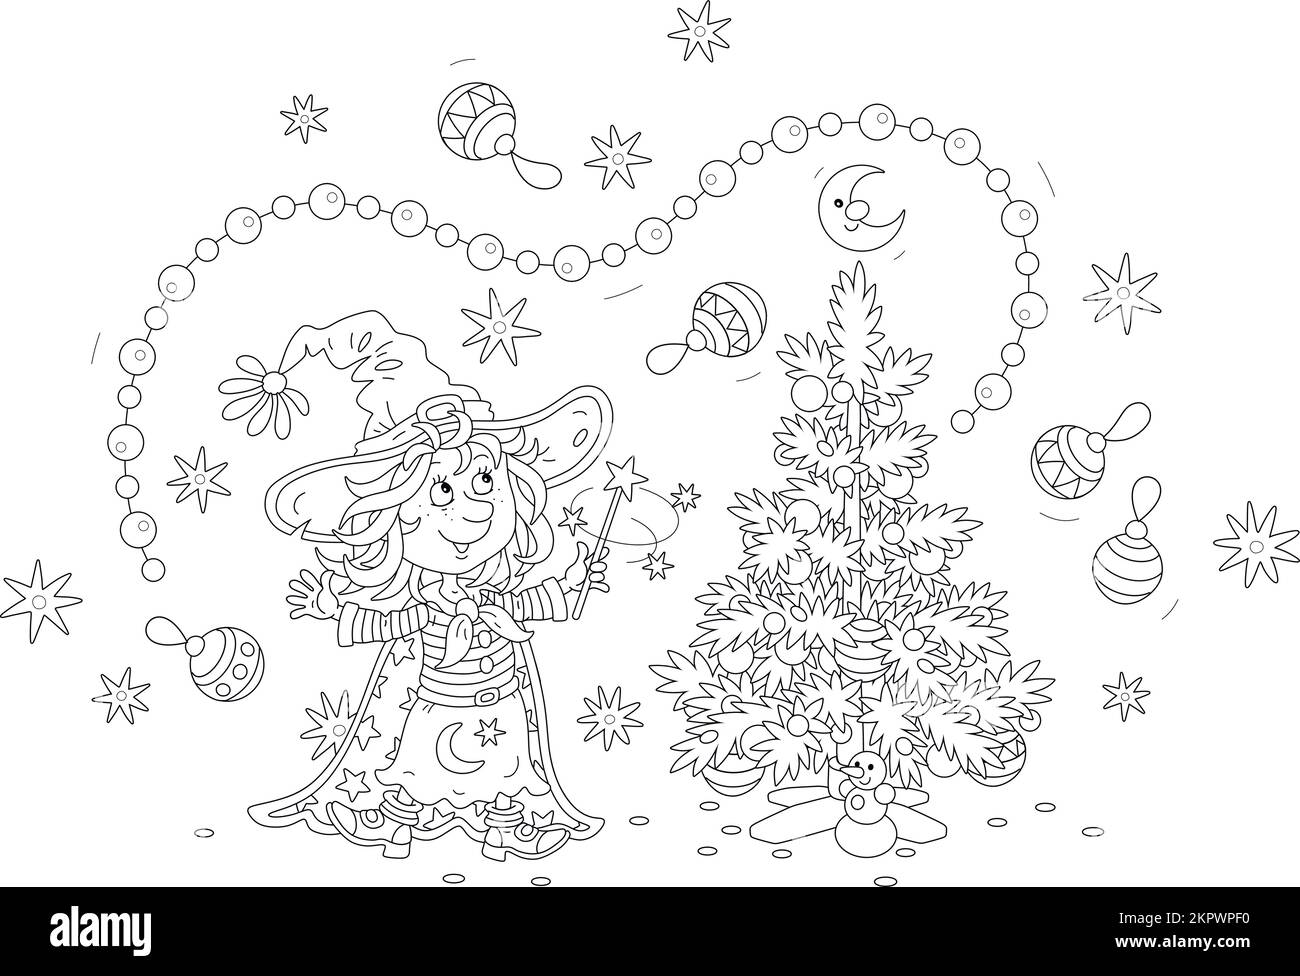 Fröhliche kleine Hexe, die ihren Zauberstab winkt und einen kleinen Weihnachtsbaum mit fliegenden Girlanden, Spielzeug und Bällen dekoriert Stock Vektor